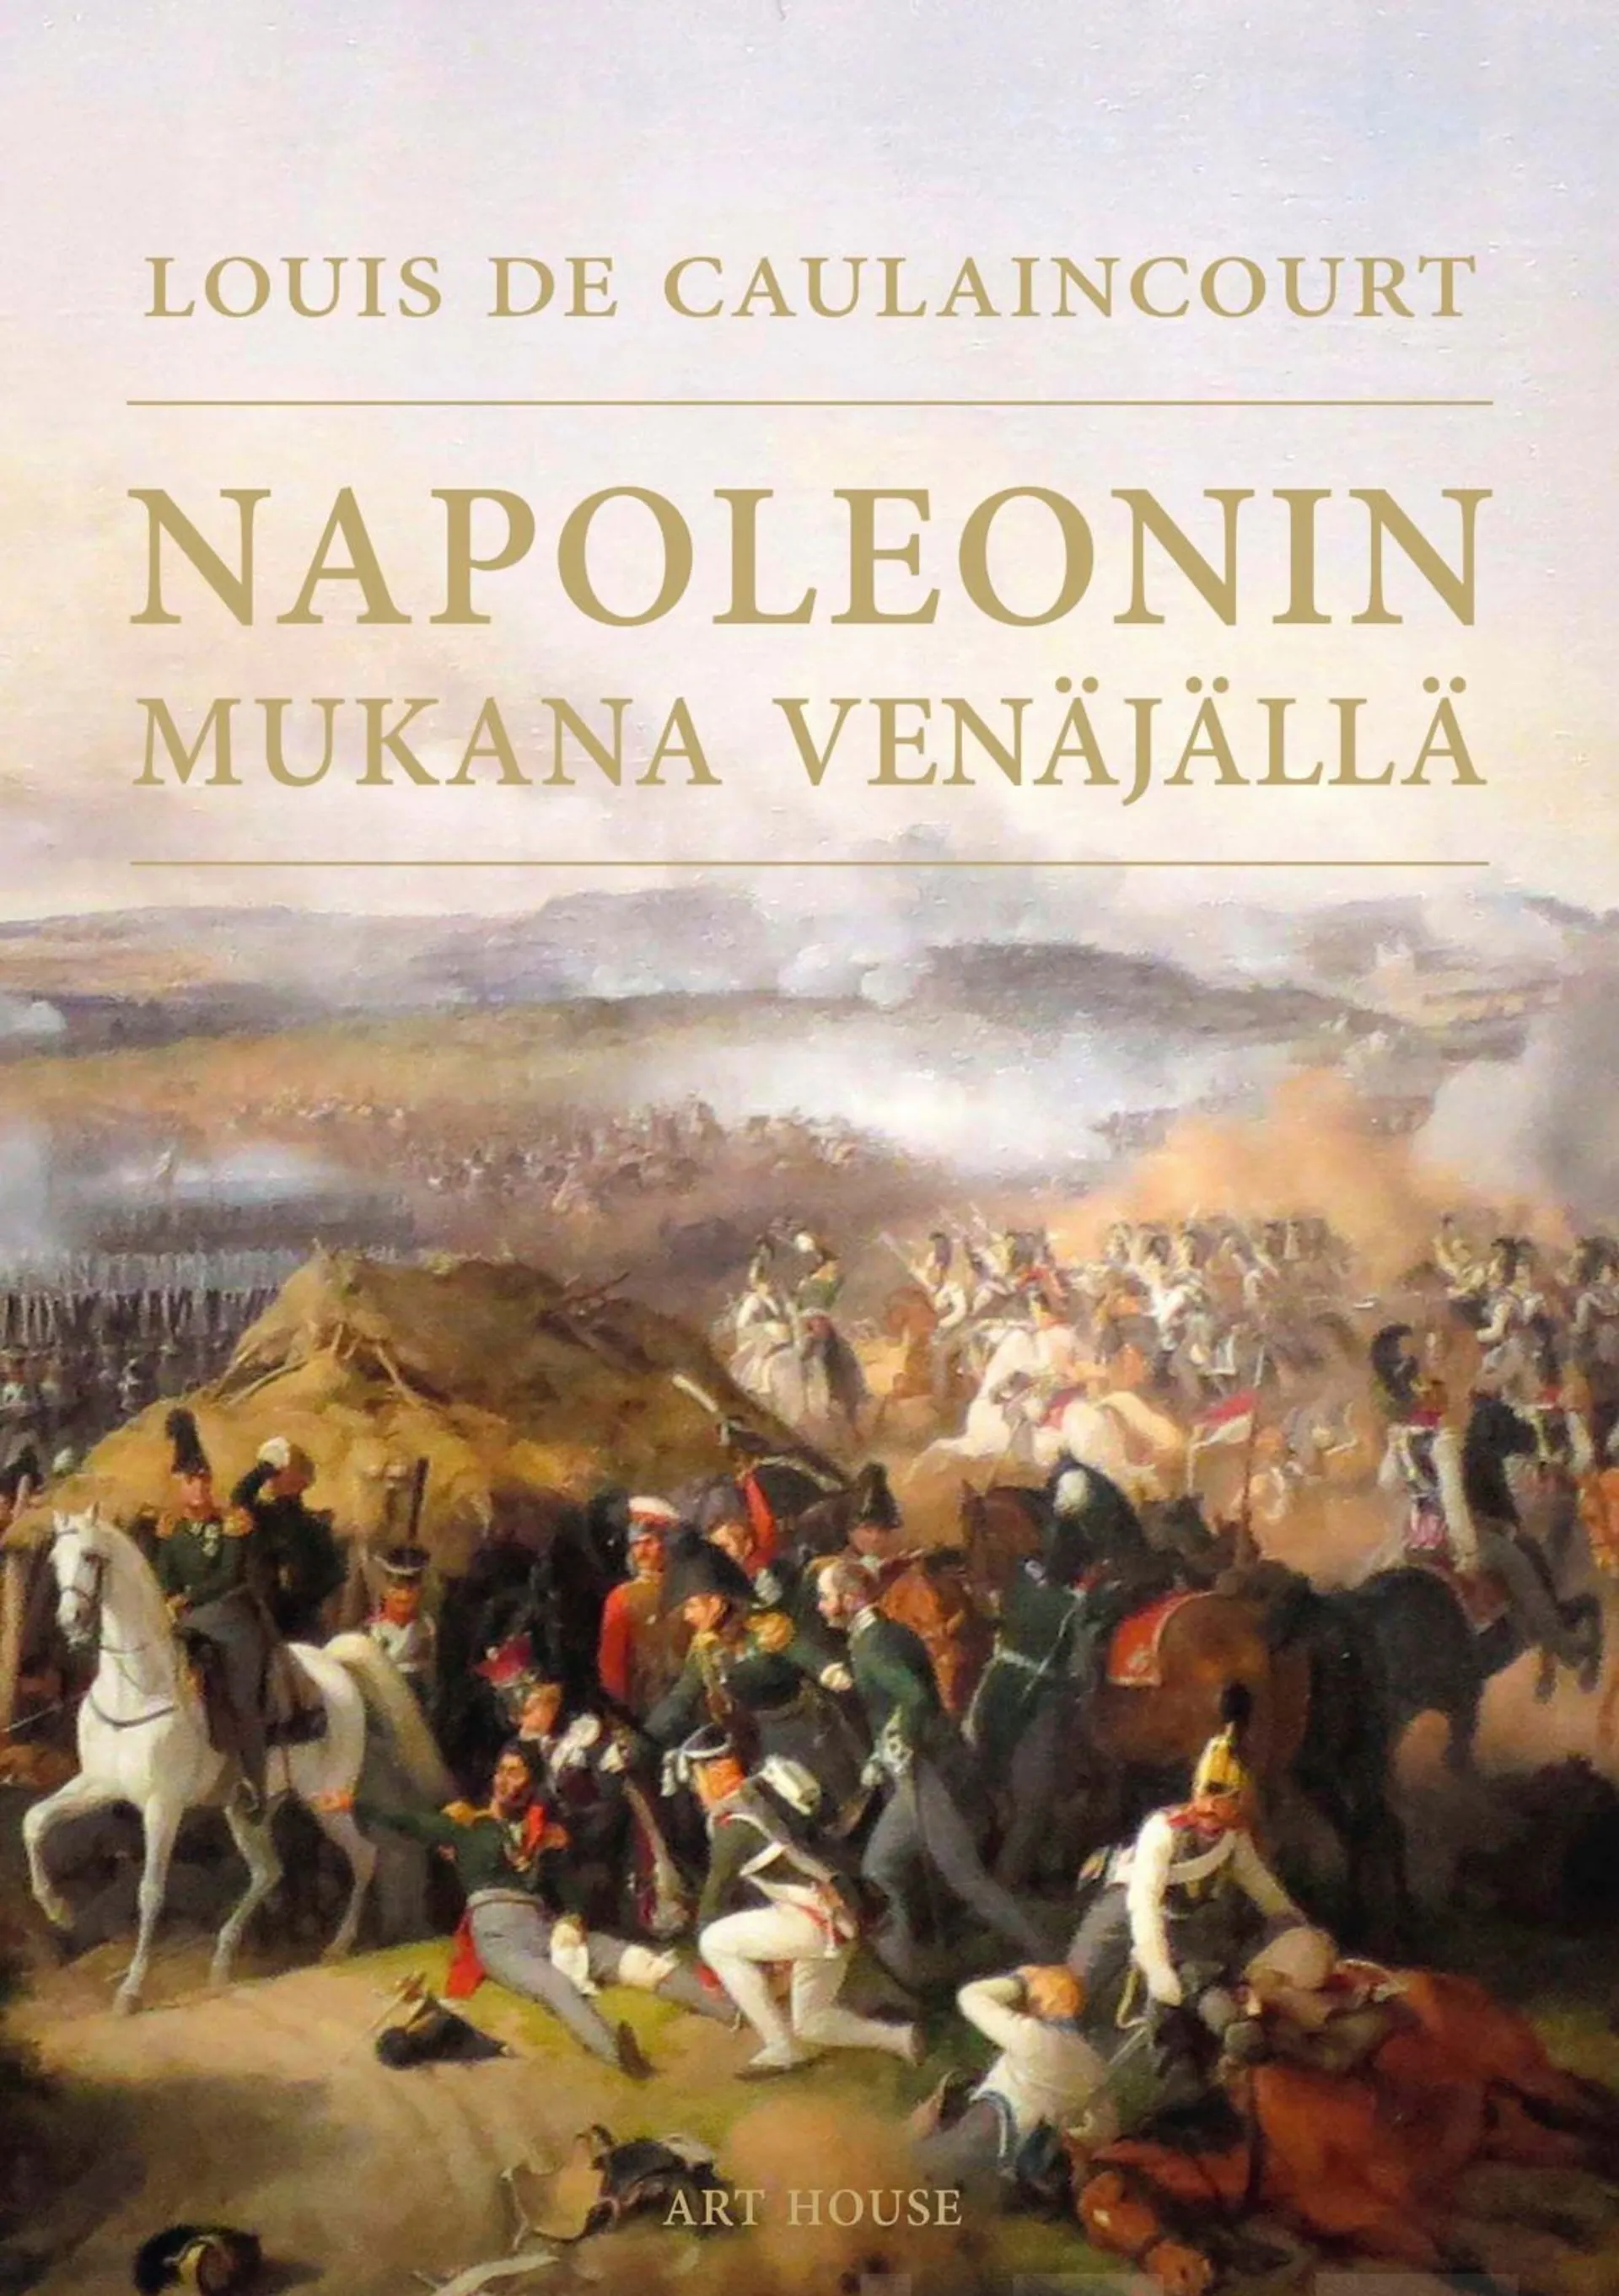 Caulaincourt, Napoleonin mukana Venäjällä